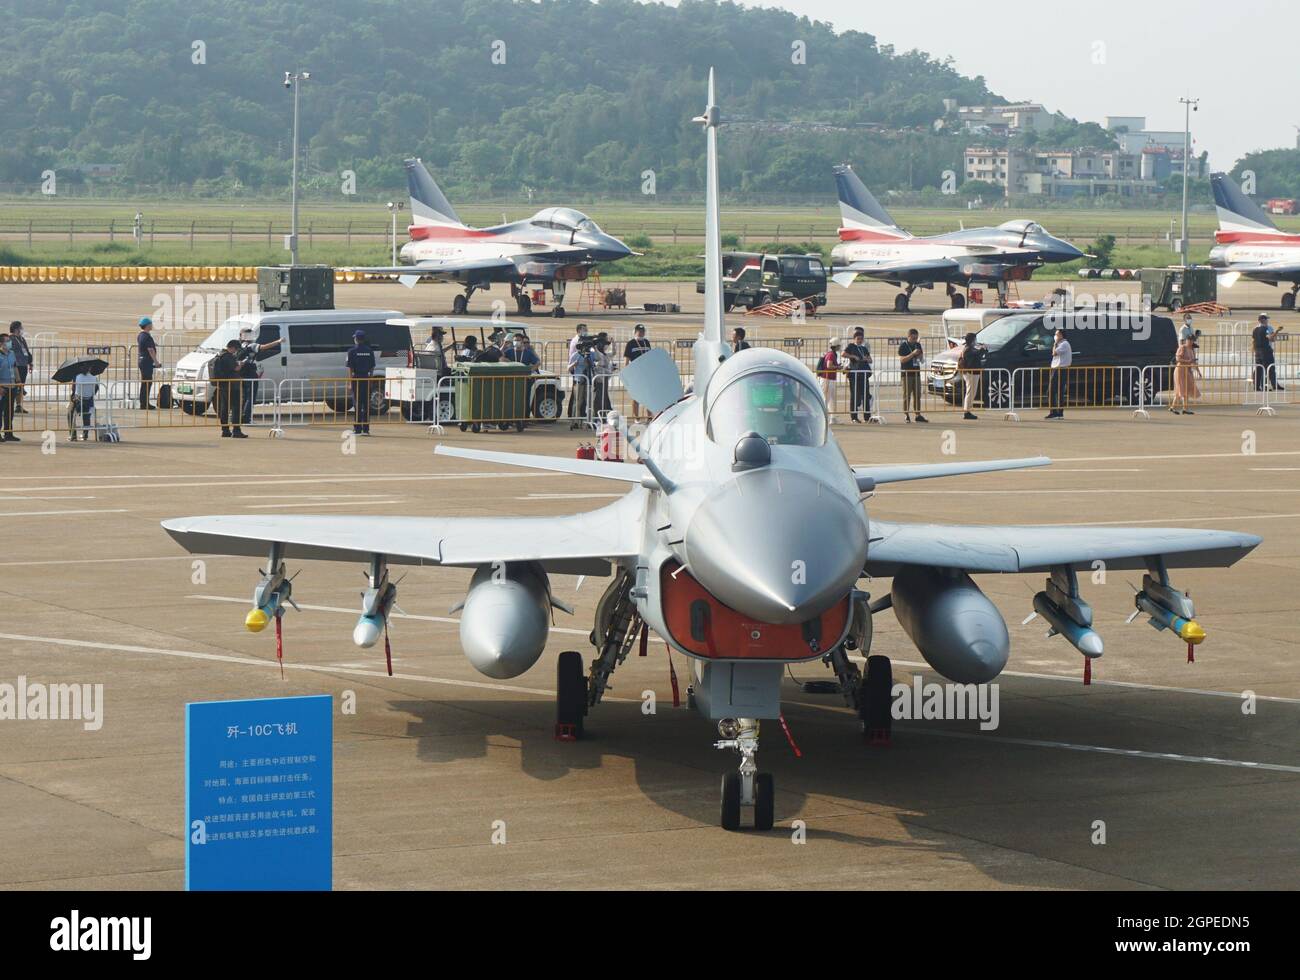 Zhuhai, Zhuhai, Chine. 29 septembre 2021. Le chasseur J-10C a été photographié au Zhuhai Air Show le 29 septembre 2021.en tant que chasseur‚ à un seul moteur le plus avancé J-10C, il a fait ses débuts au Zhuhai Air Show et a attiré l'attention de nombreux fans militaires.le chasseur J-10C est un chasseur multi-usages supersonique amélioré de troisième génération développé par mon pays indépendamment.„ Il est équipé de systèmes avioniques avancés et de multiples armes aéroportées avancées. Crédit : ZUMA Press, Inc./Alay Live News Banque D'Images